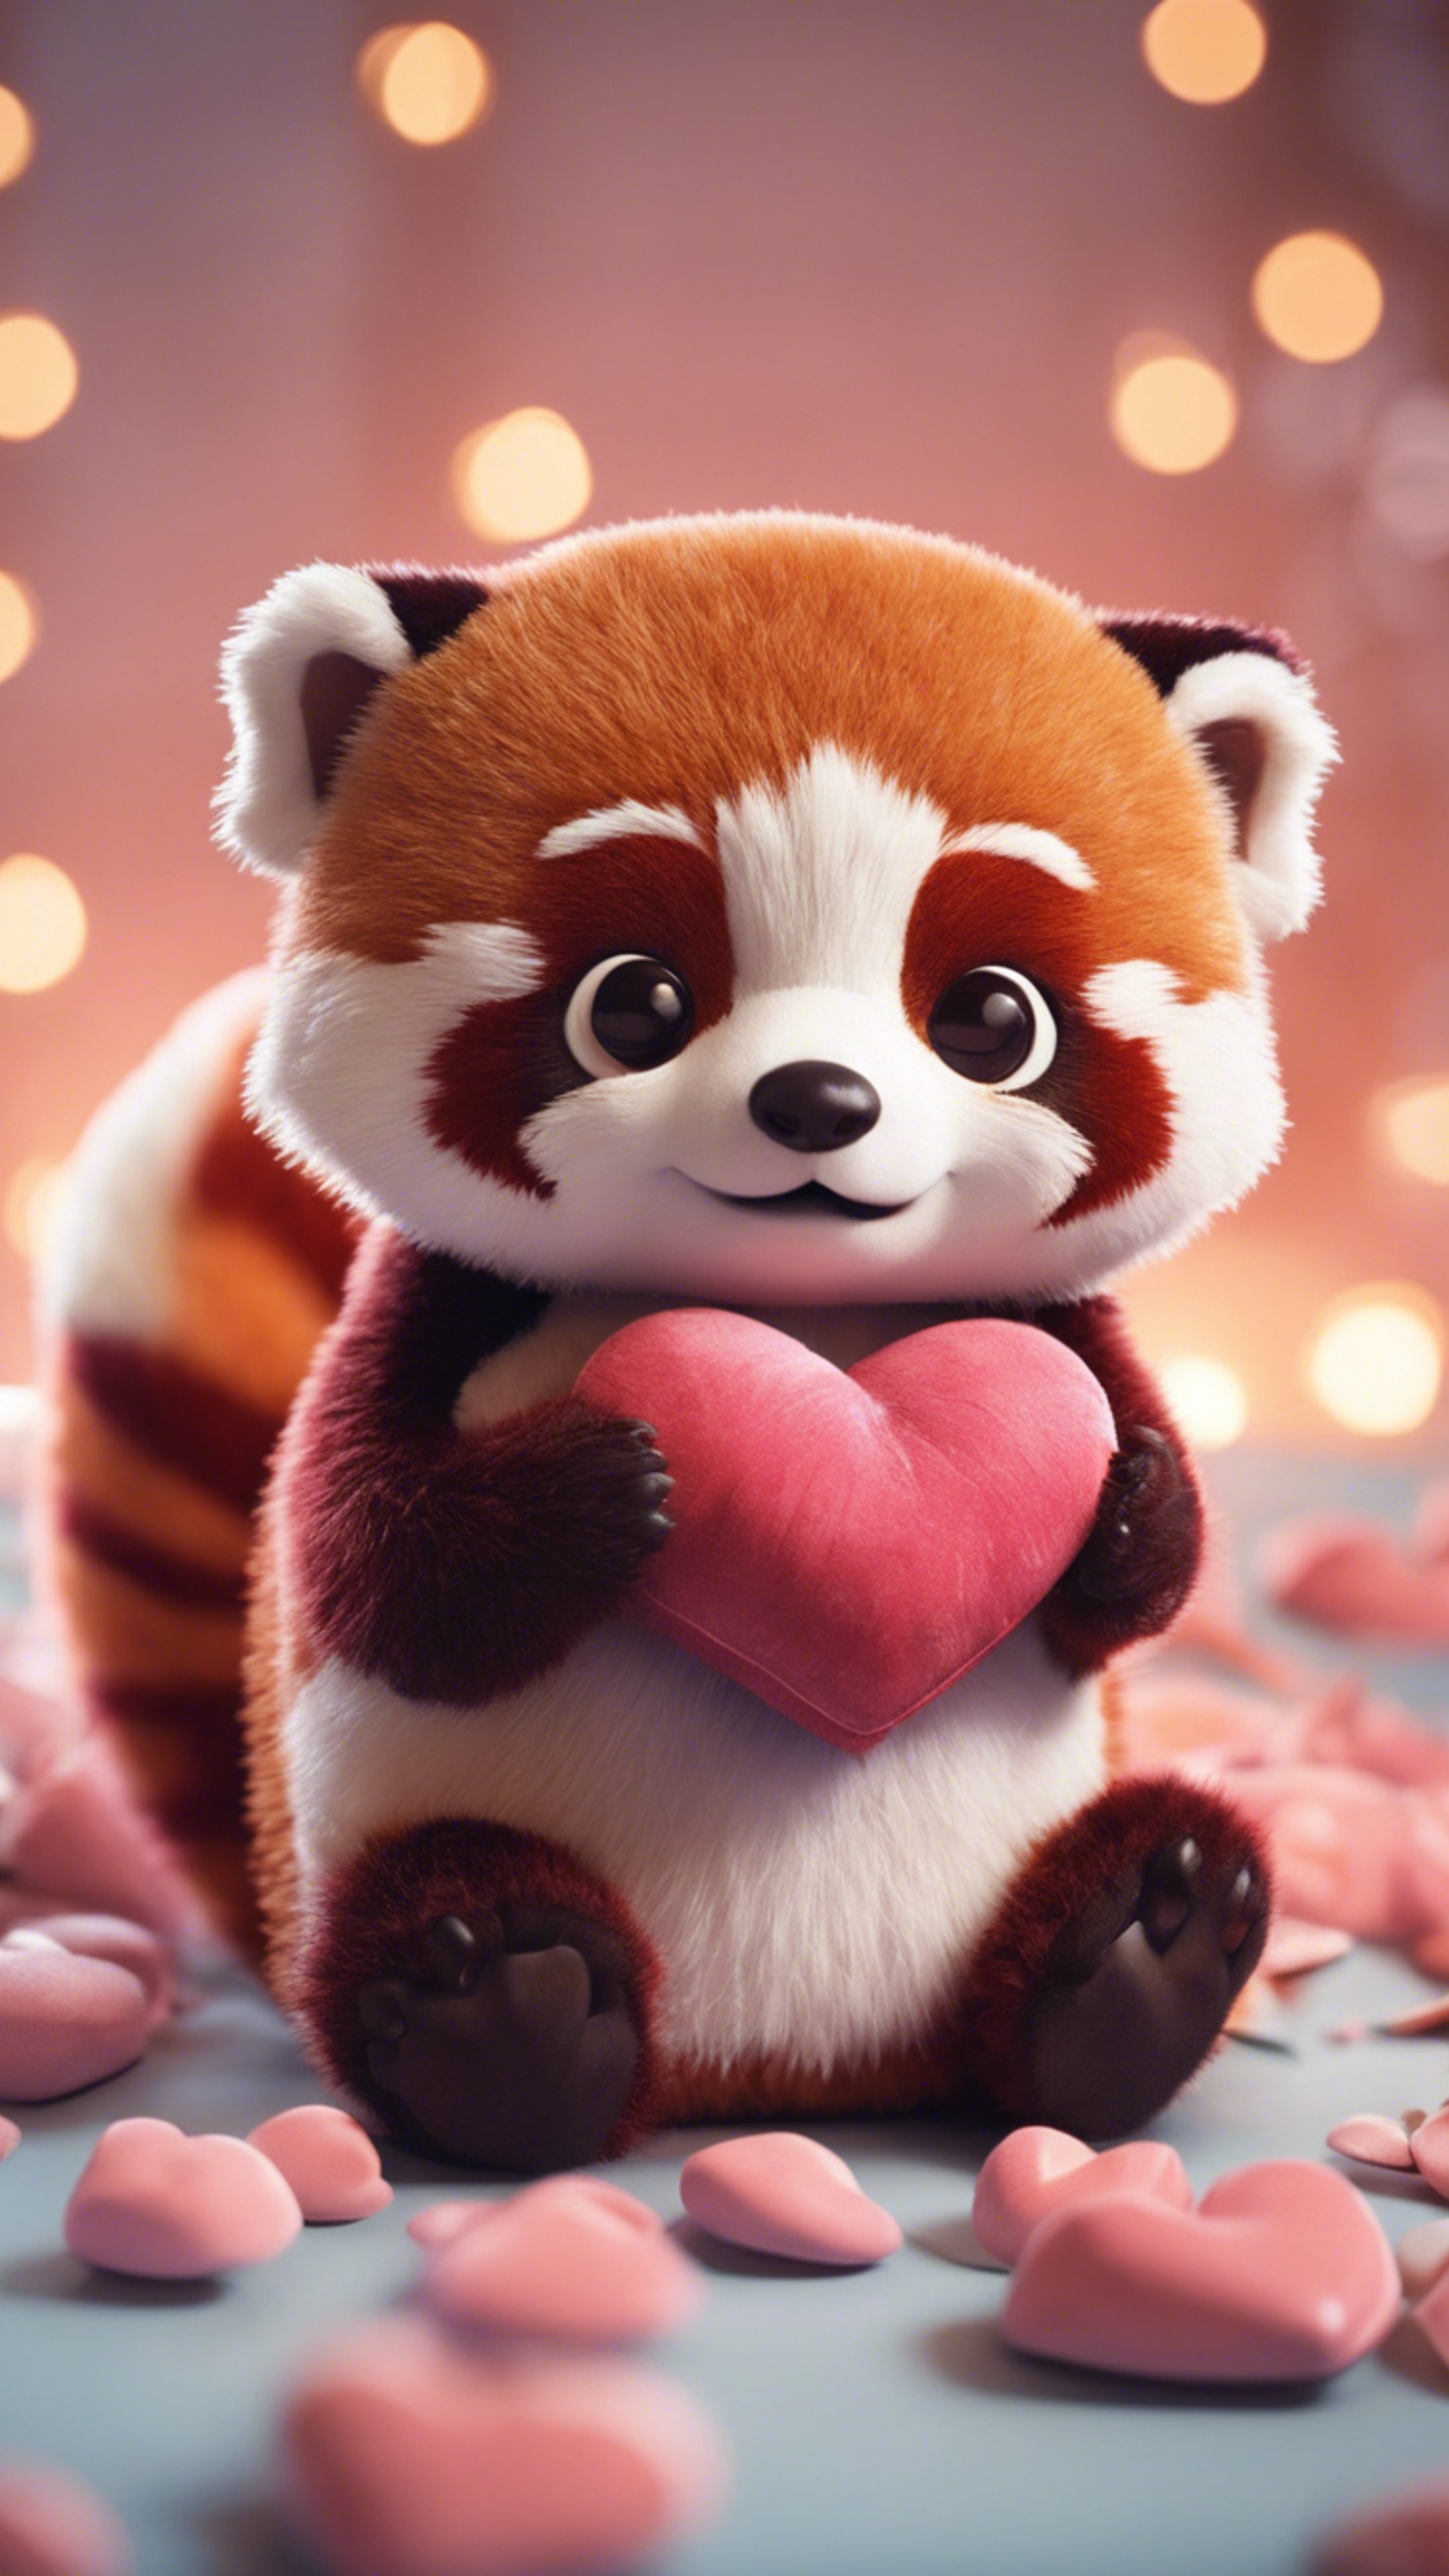 A kawaii red panda, wide-eyed, hugging a heart-shaped pillow. 牆紙[45d6f15b7fce49d58985]